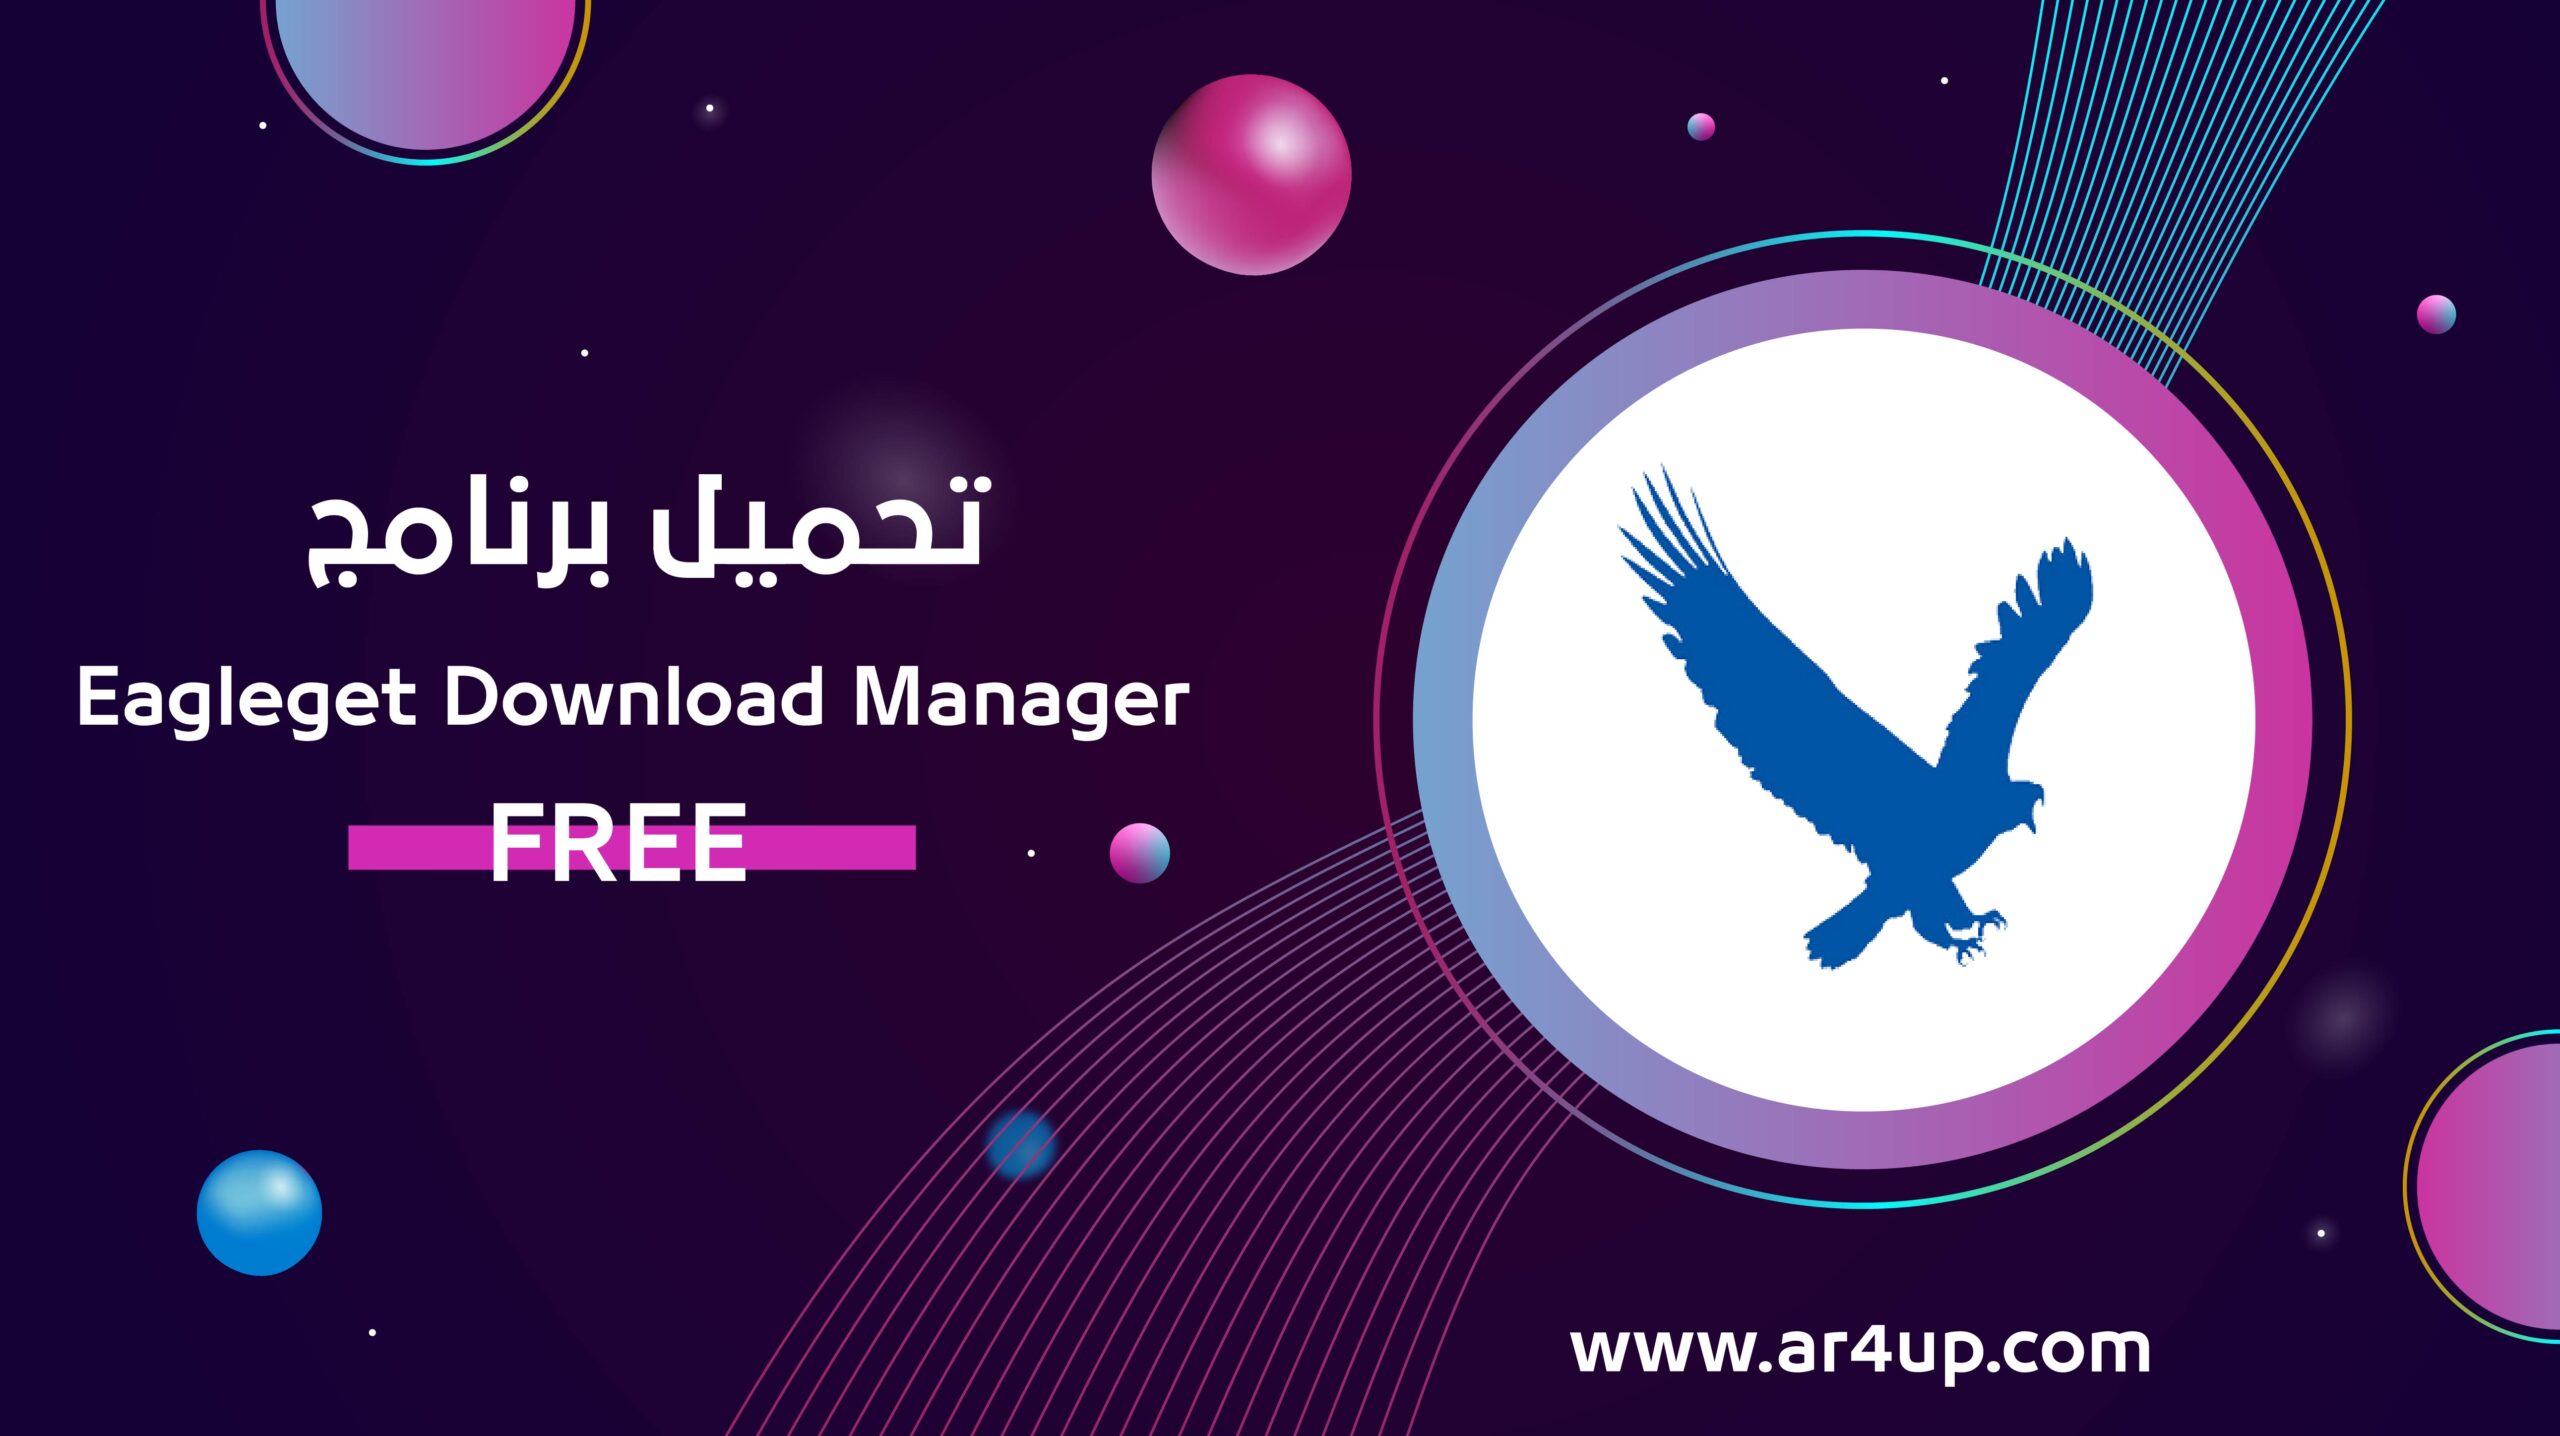 تحميل برنامج EagleGet Download Manager للتحميل المجاني من الإنترنت